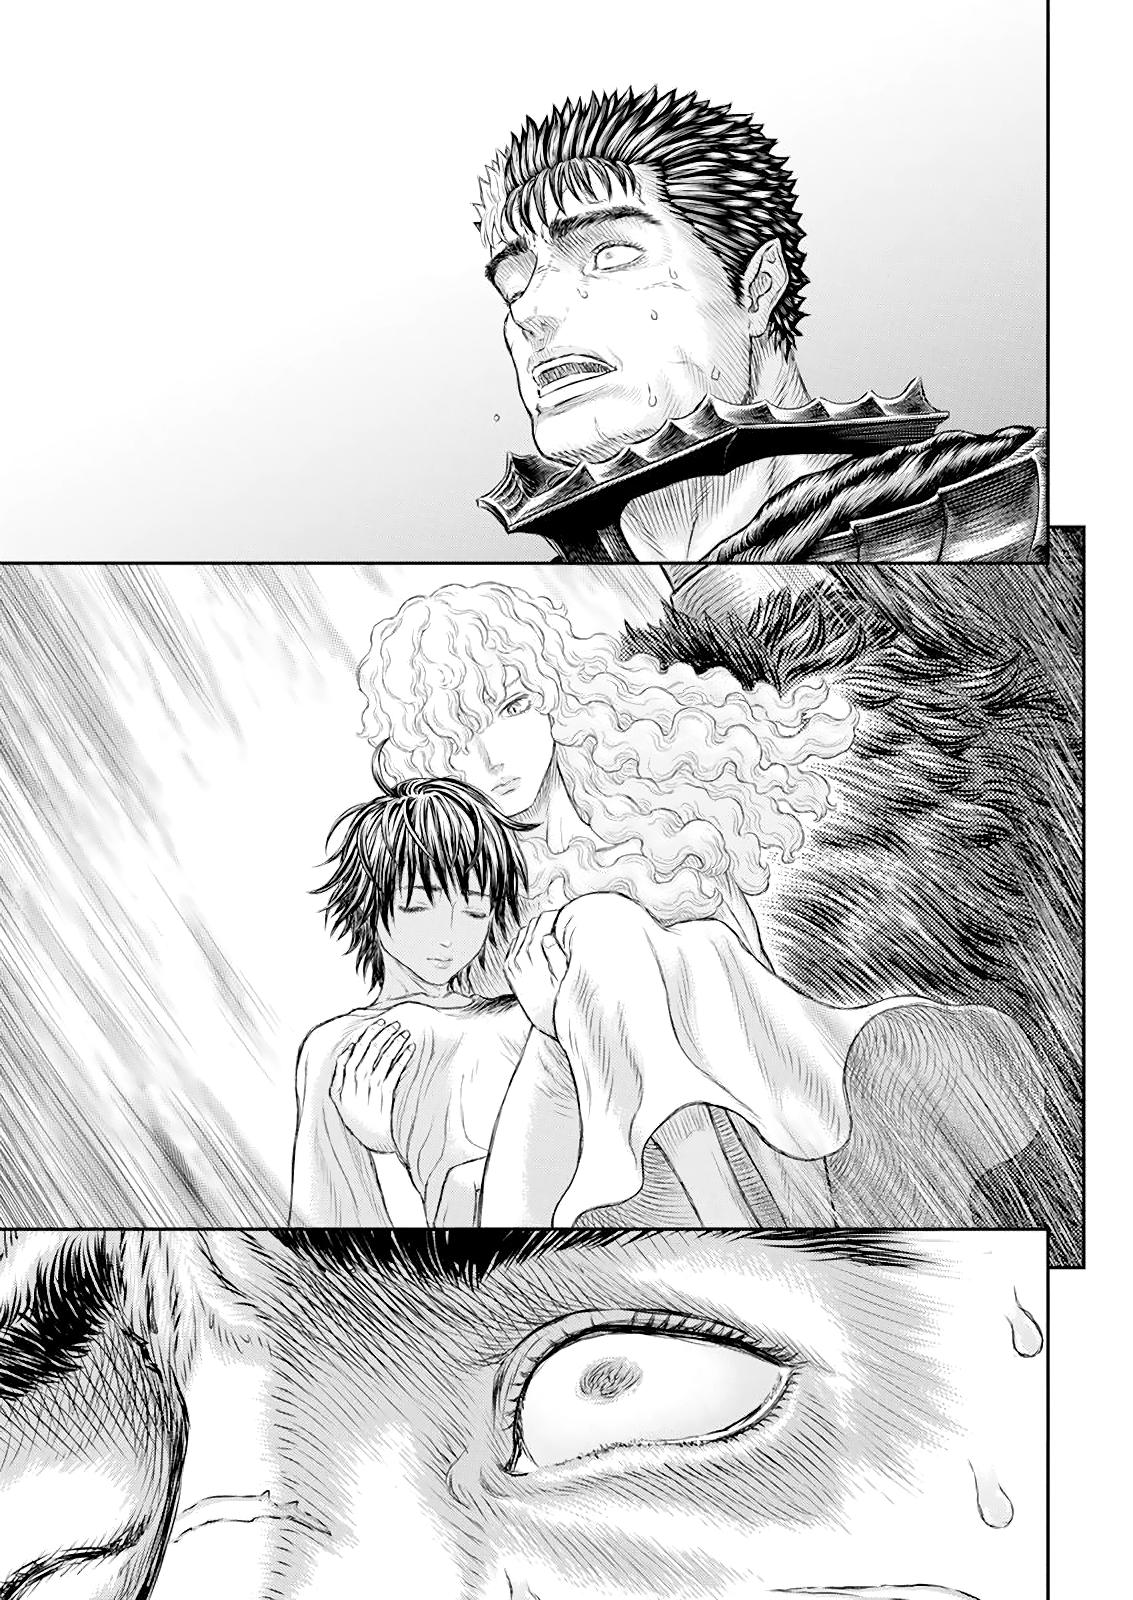 Berserk Manga Chapter 368 image 16